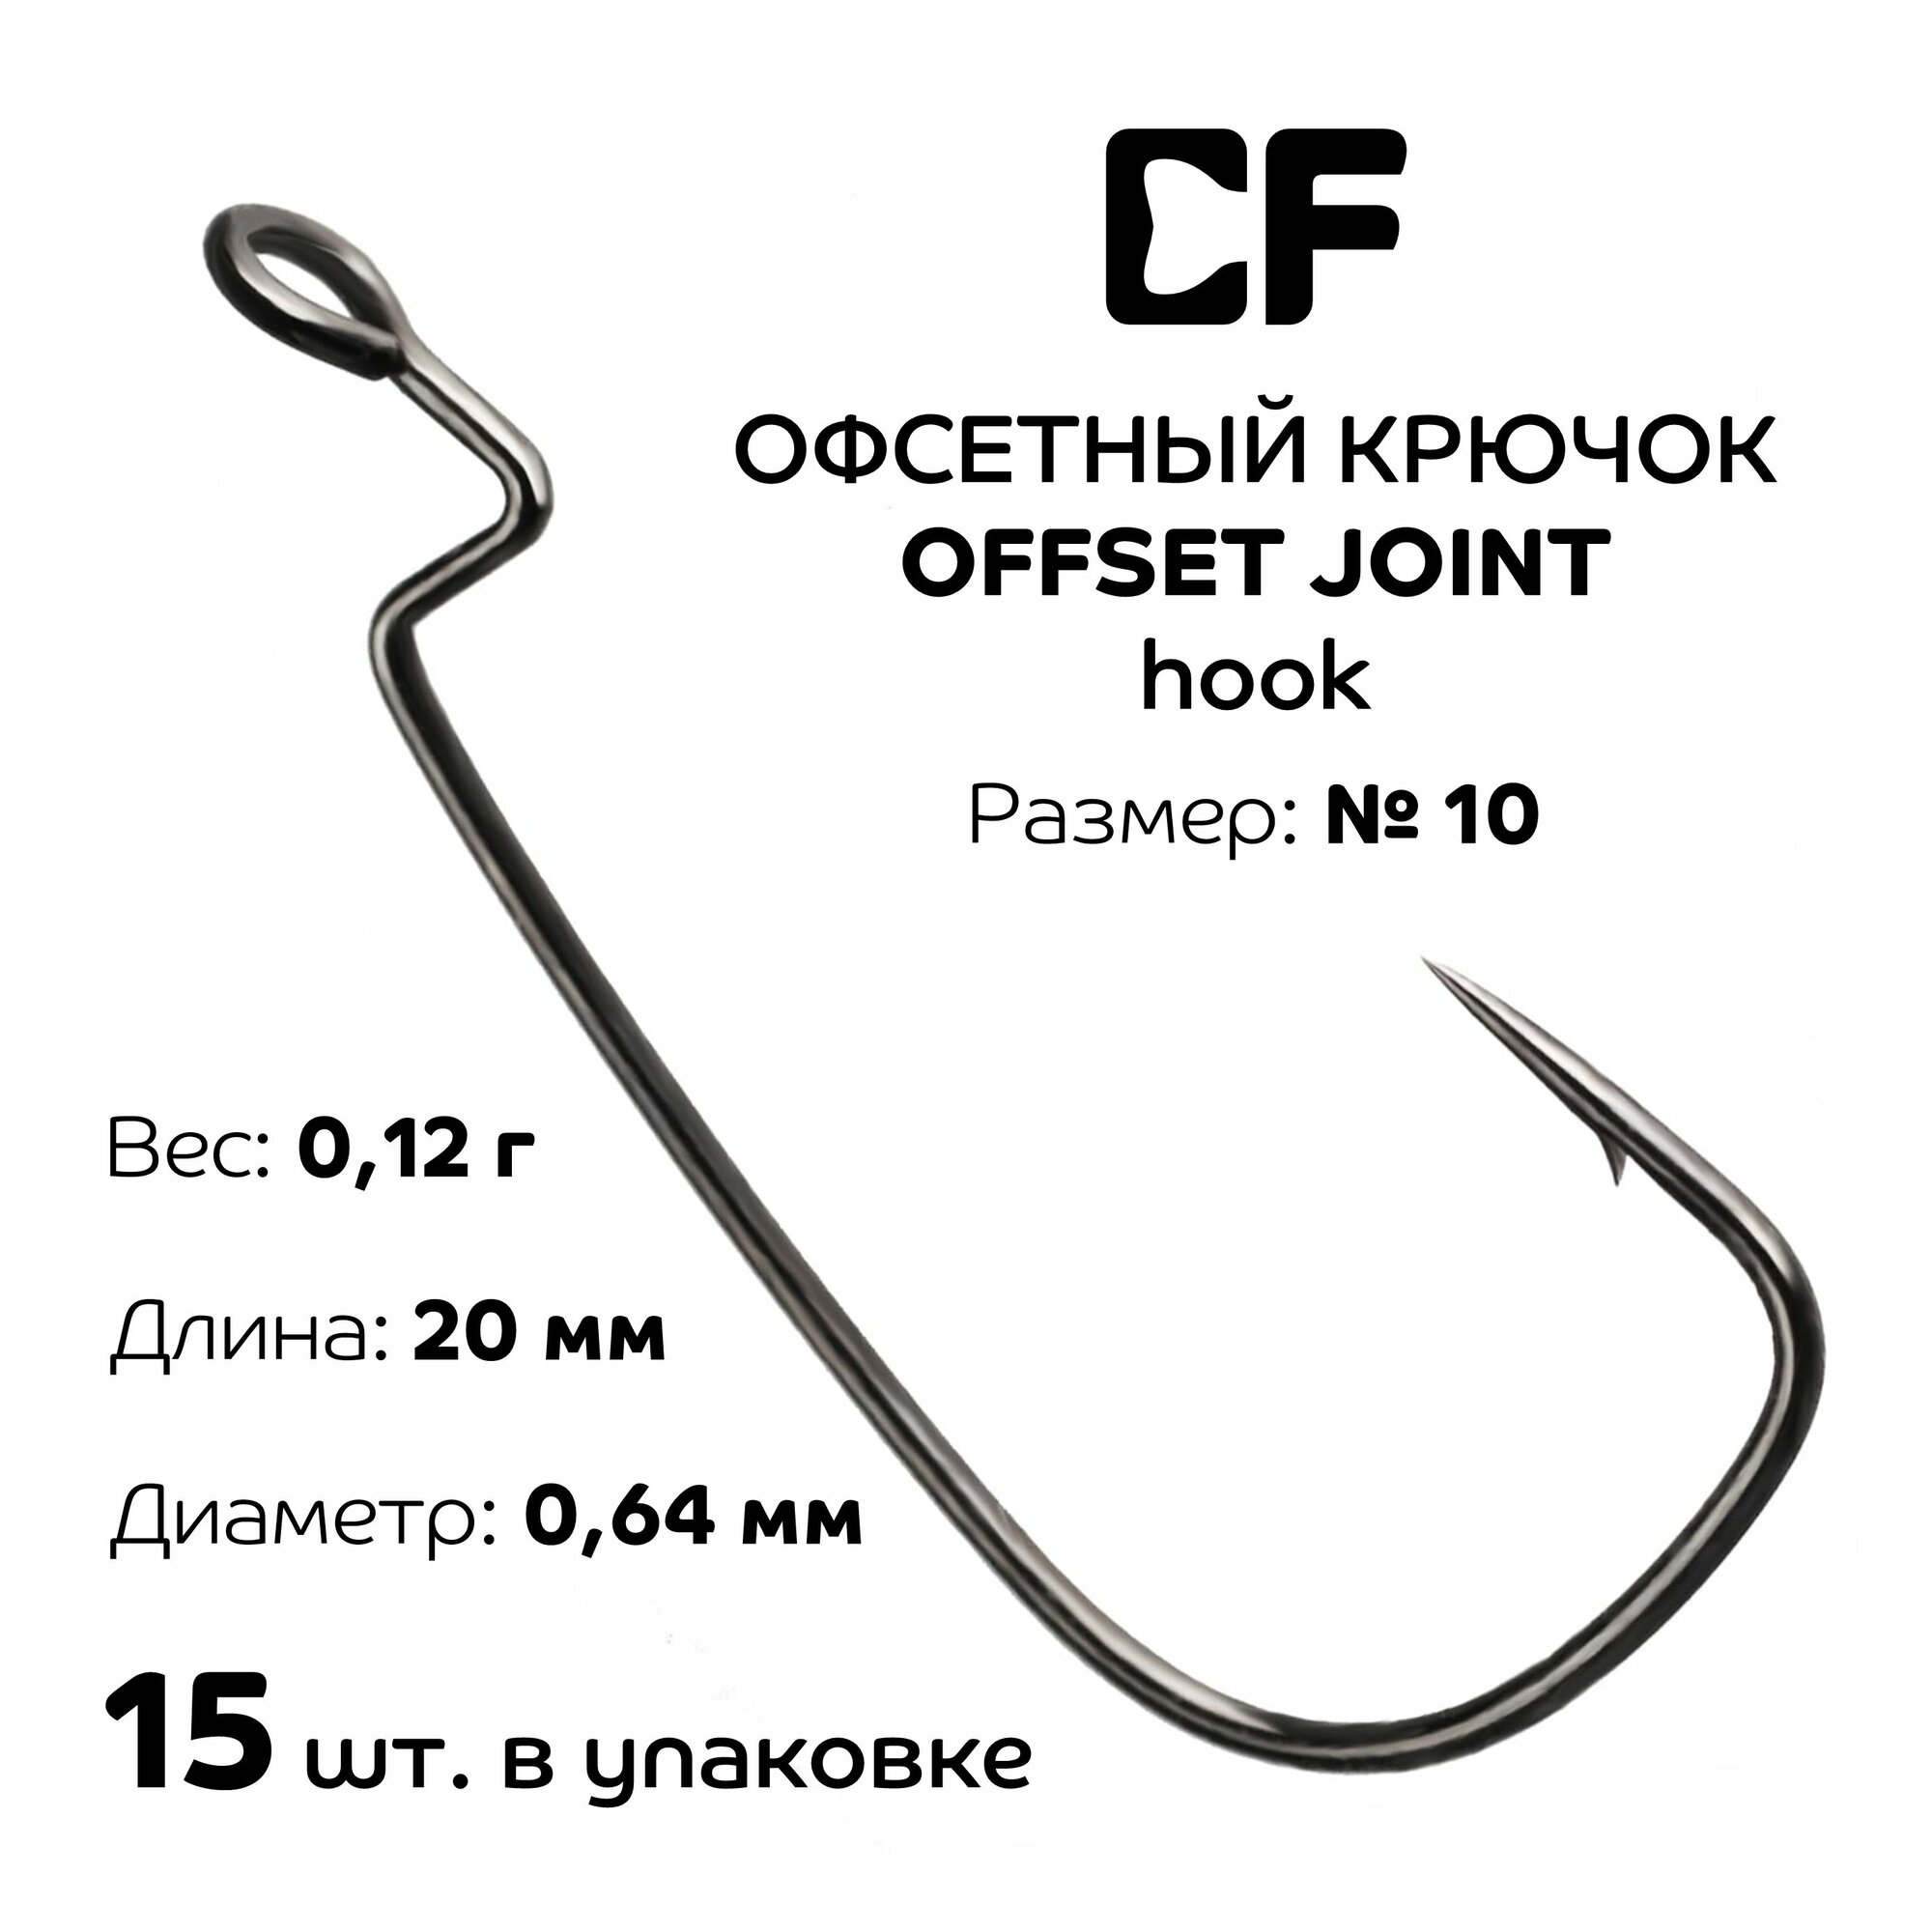 Офсетный крючок CF Offset joint hook №10 15 шт